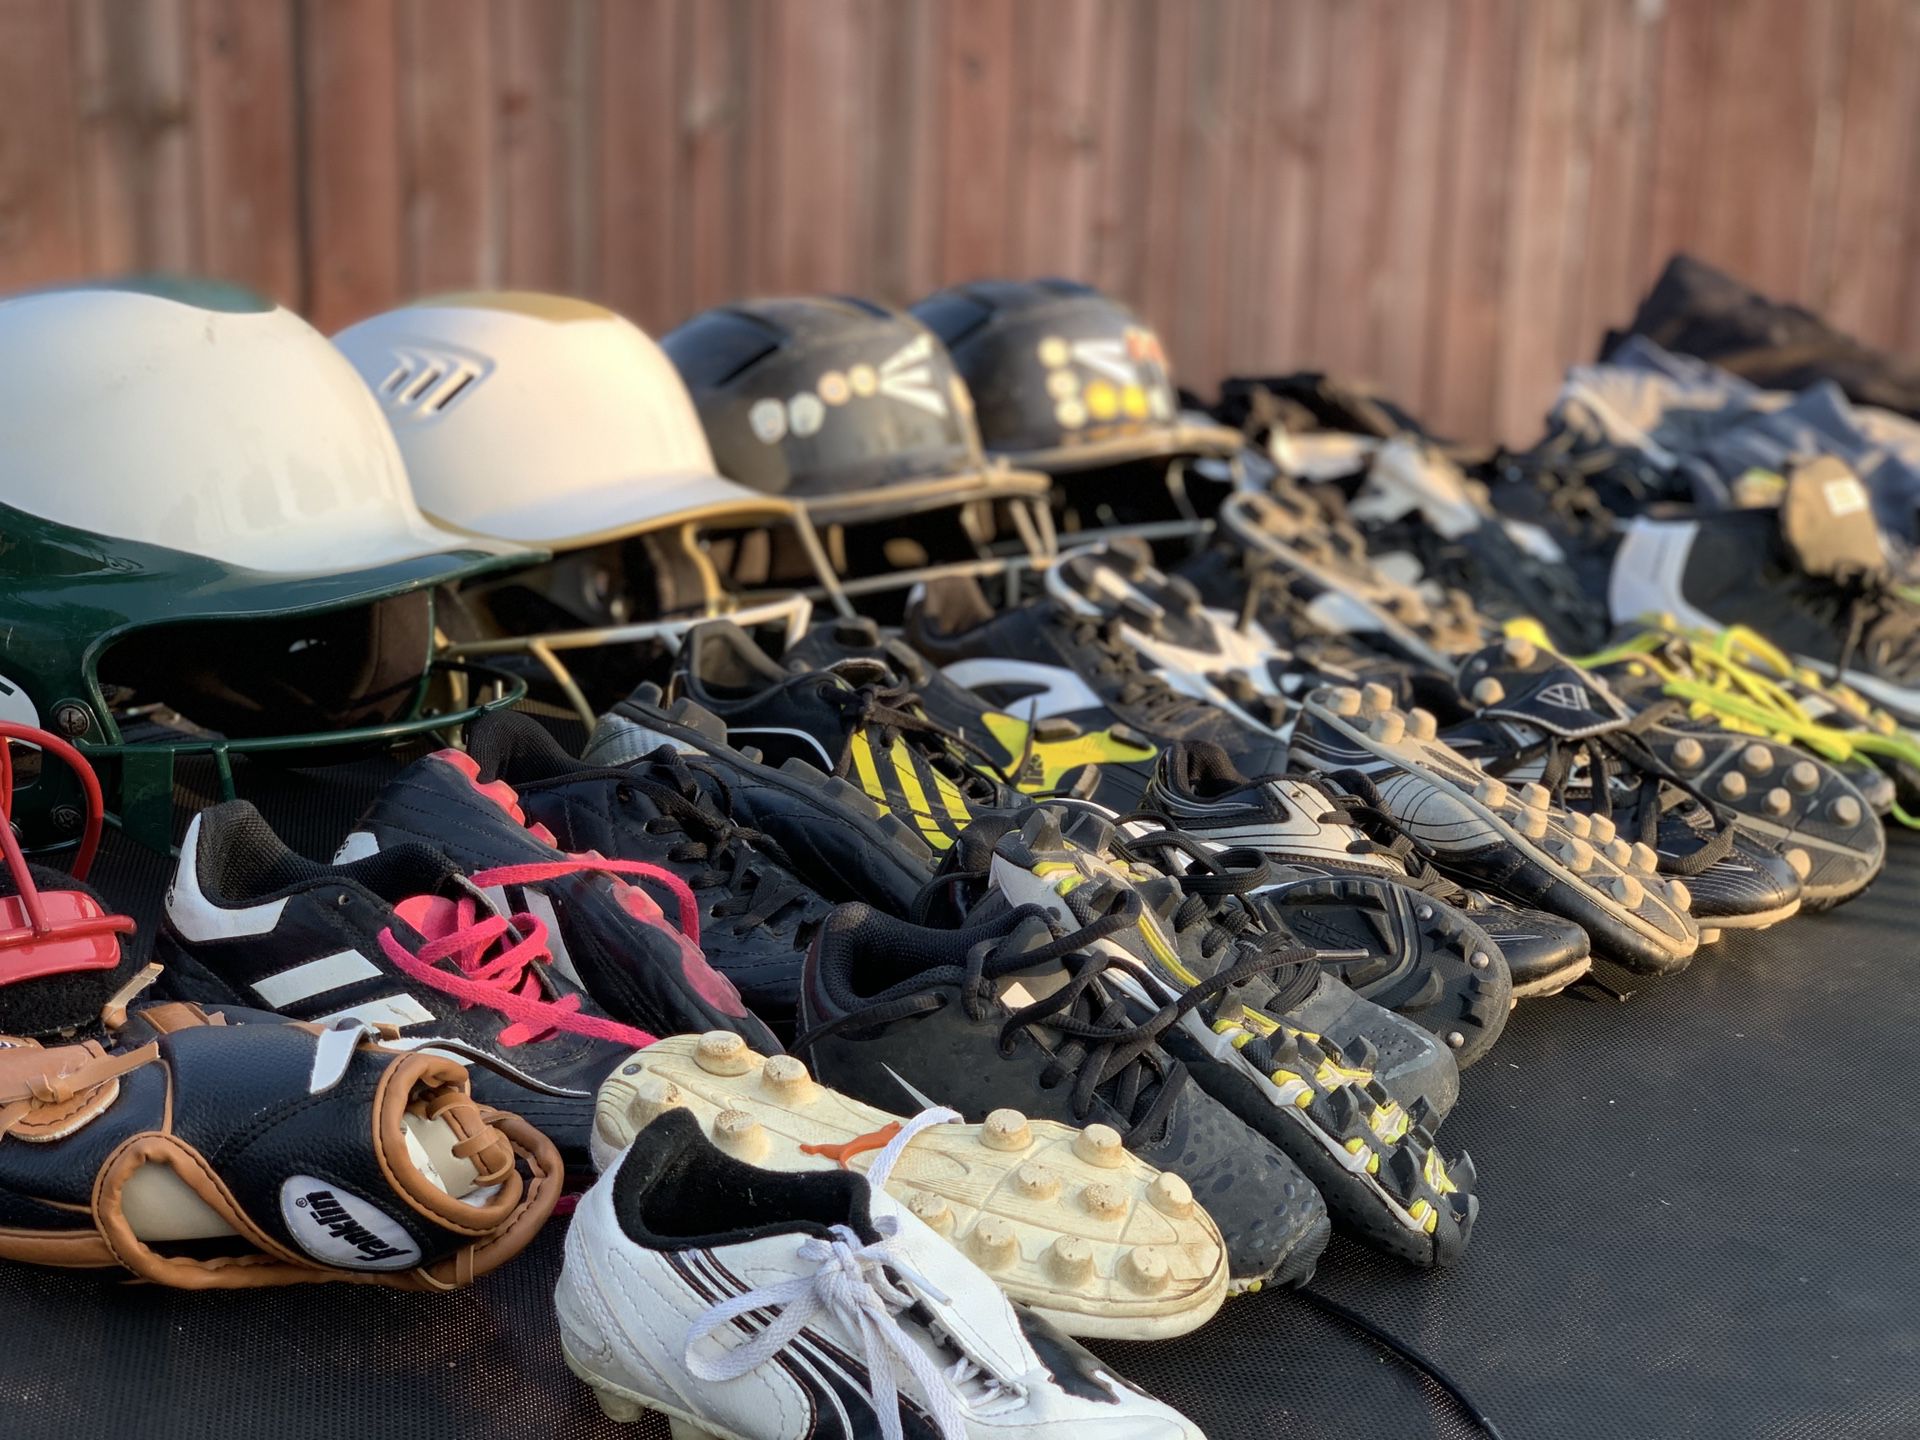 Softball/ baseball helmets, face guard, cleats, gloves, pants